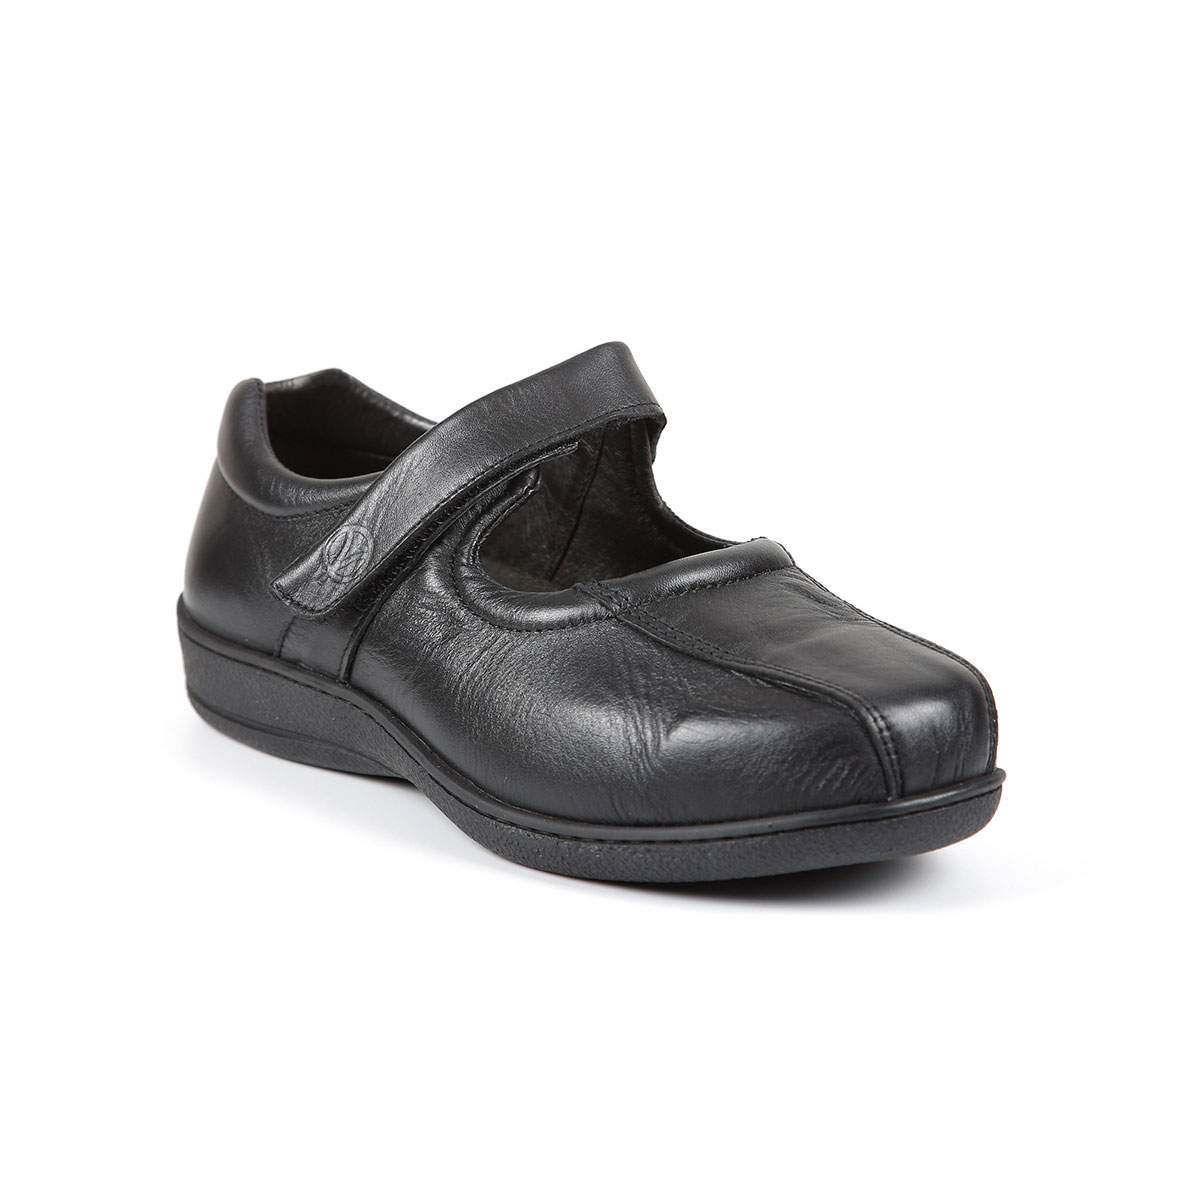 Black Zinder shoe